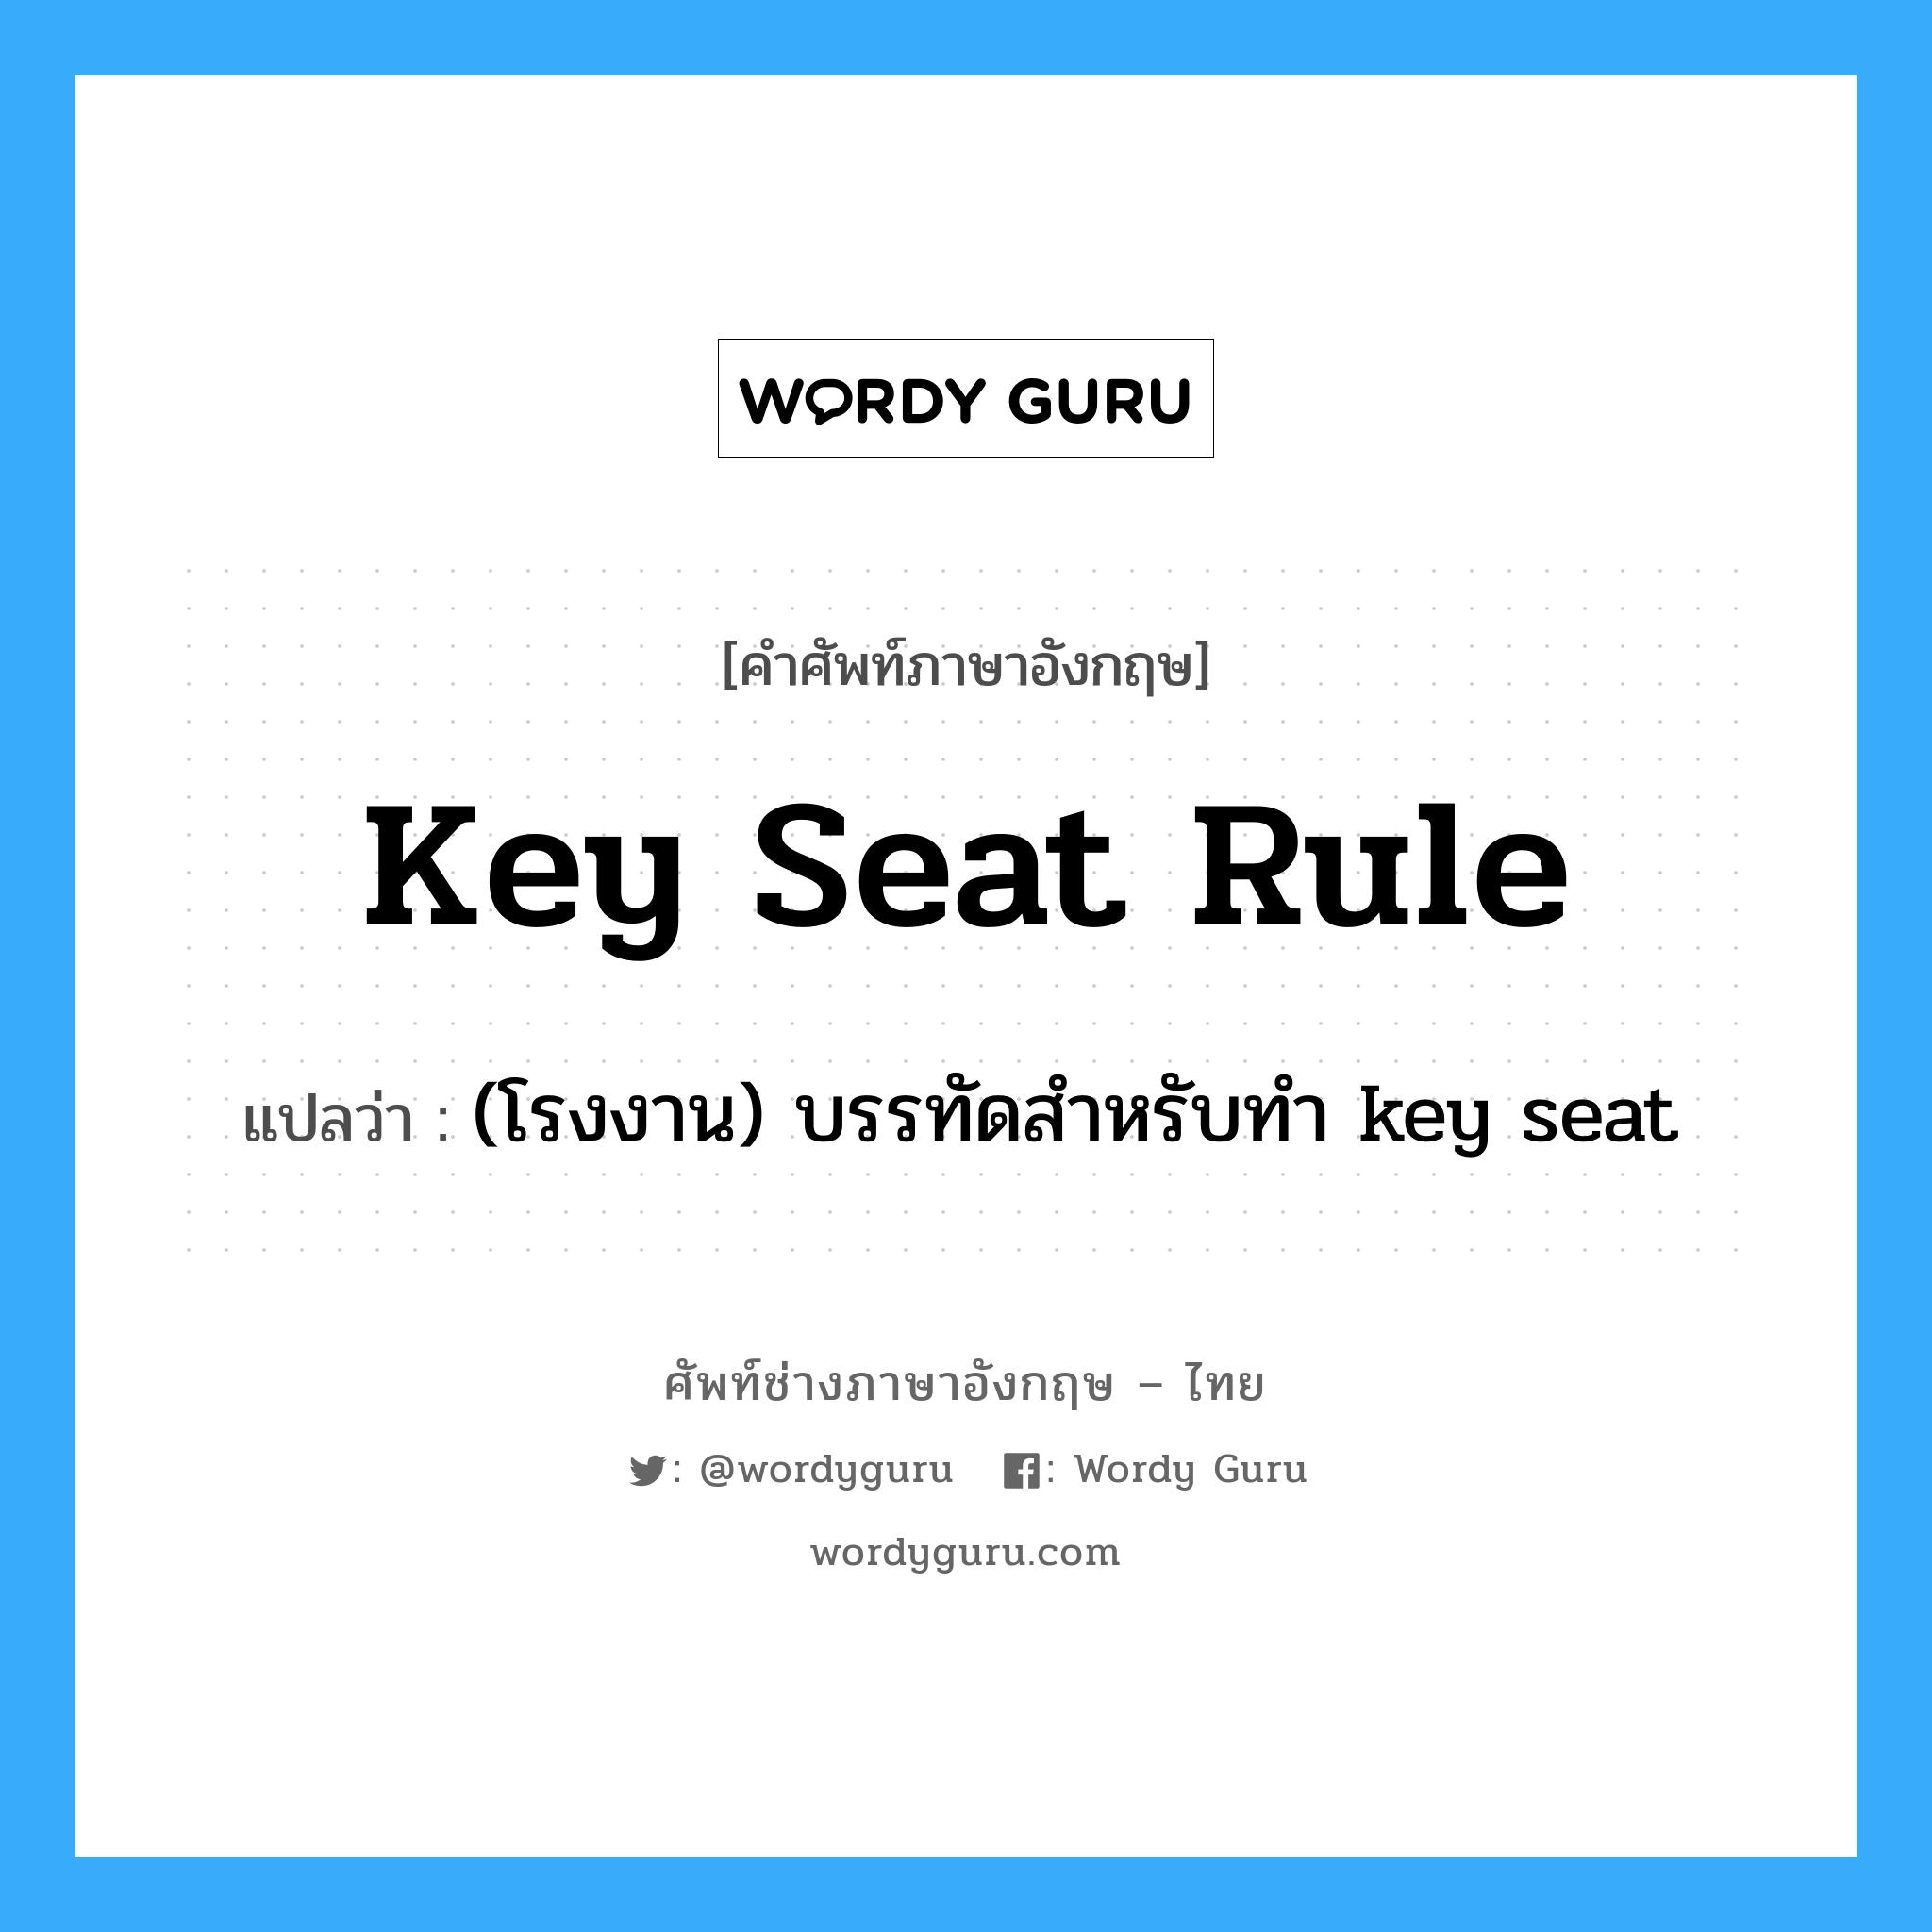 (โรงงาน) บรรทัดสำหรับทำ key seat ภาษาอังกฤษ?, คำศัพท์ช่างภาษาอังกฤษ - ไทย (โรงงาน) บรรทัดสำหรับทำ key seat คำศัพท์ภาษาอังกฤษ (โรงงาน) บรรทัดสำหรับทำ key seat แปลว่า key seat rule